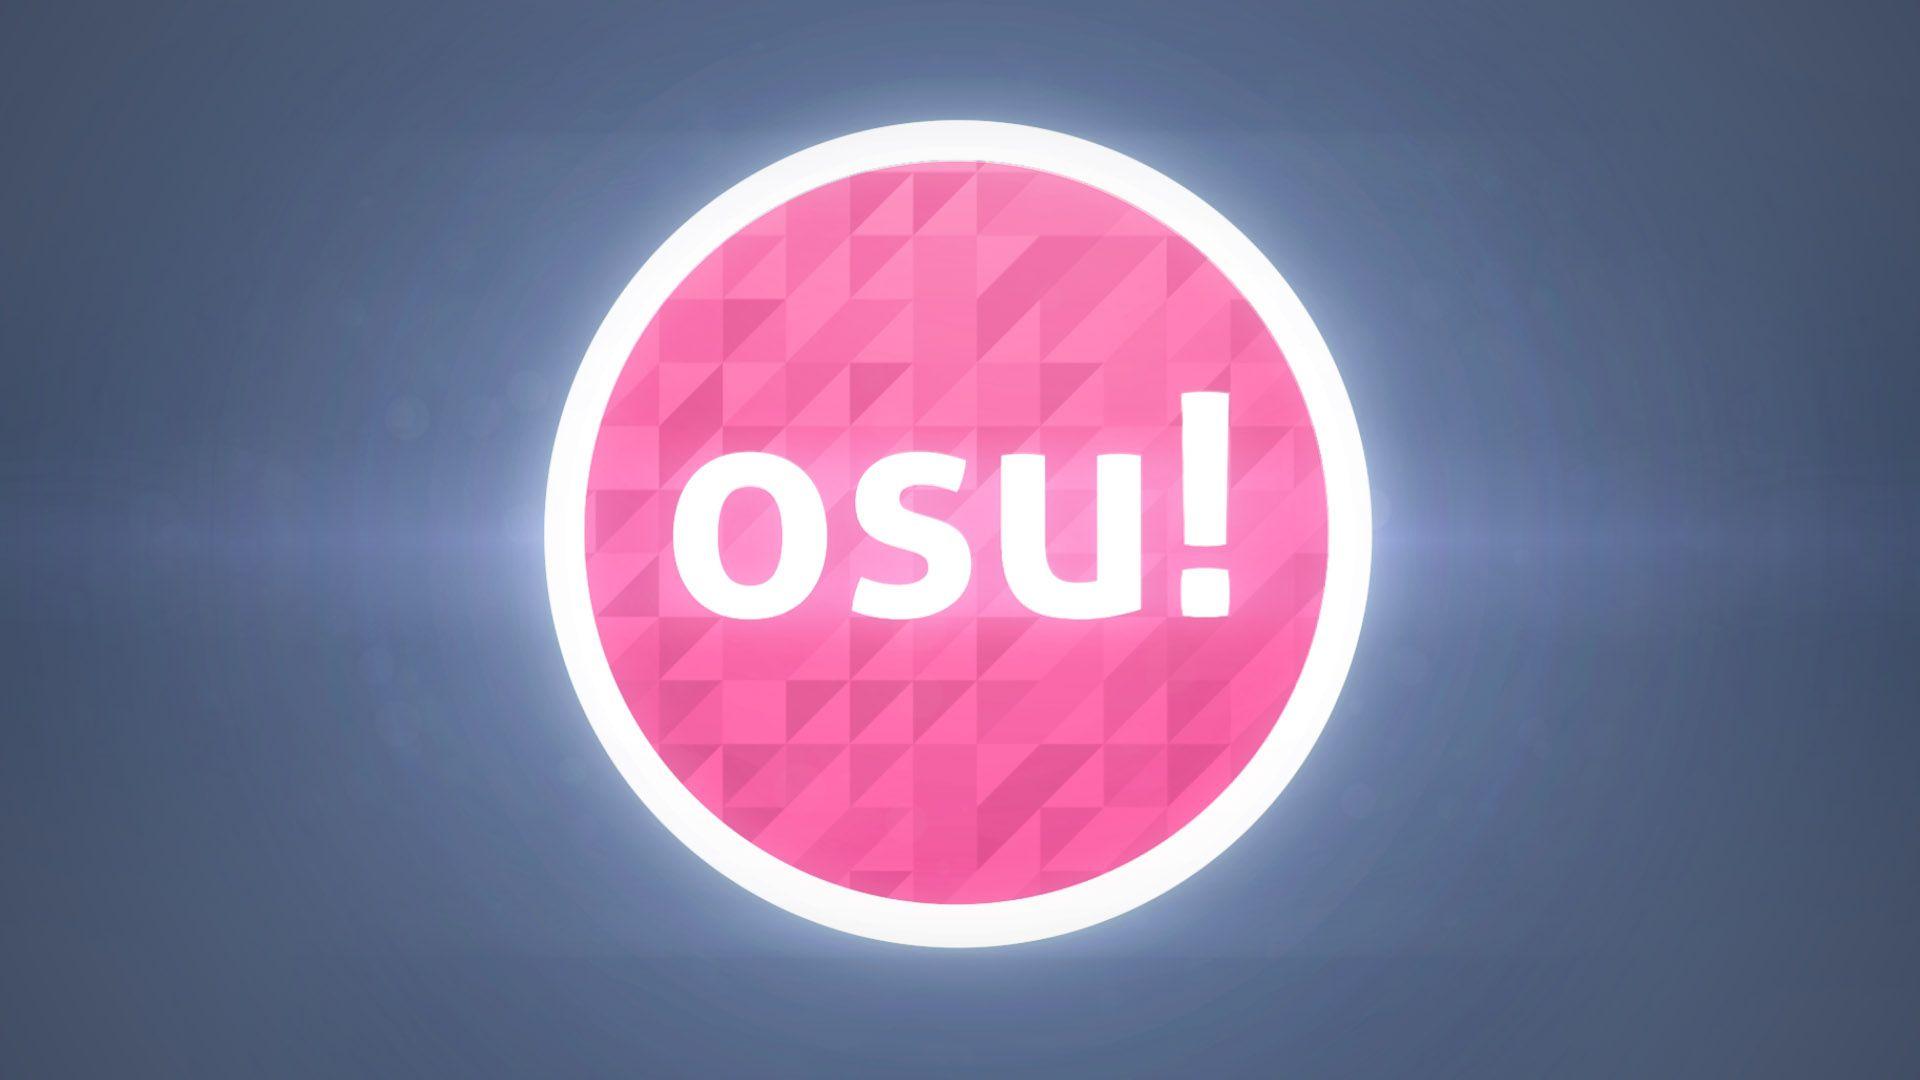 OSU Logo - Osu Wallpaper HD Download free | PixelsTalk.Net